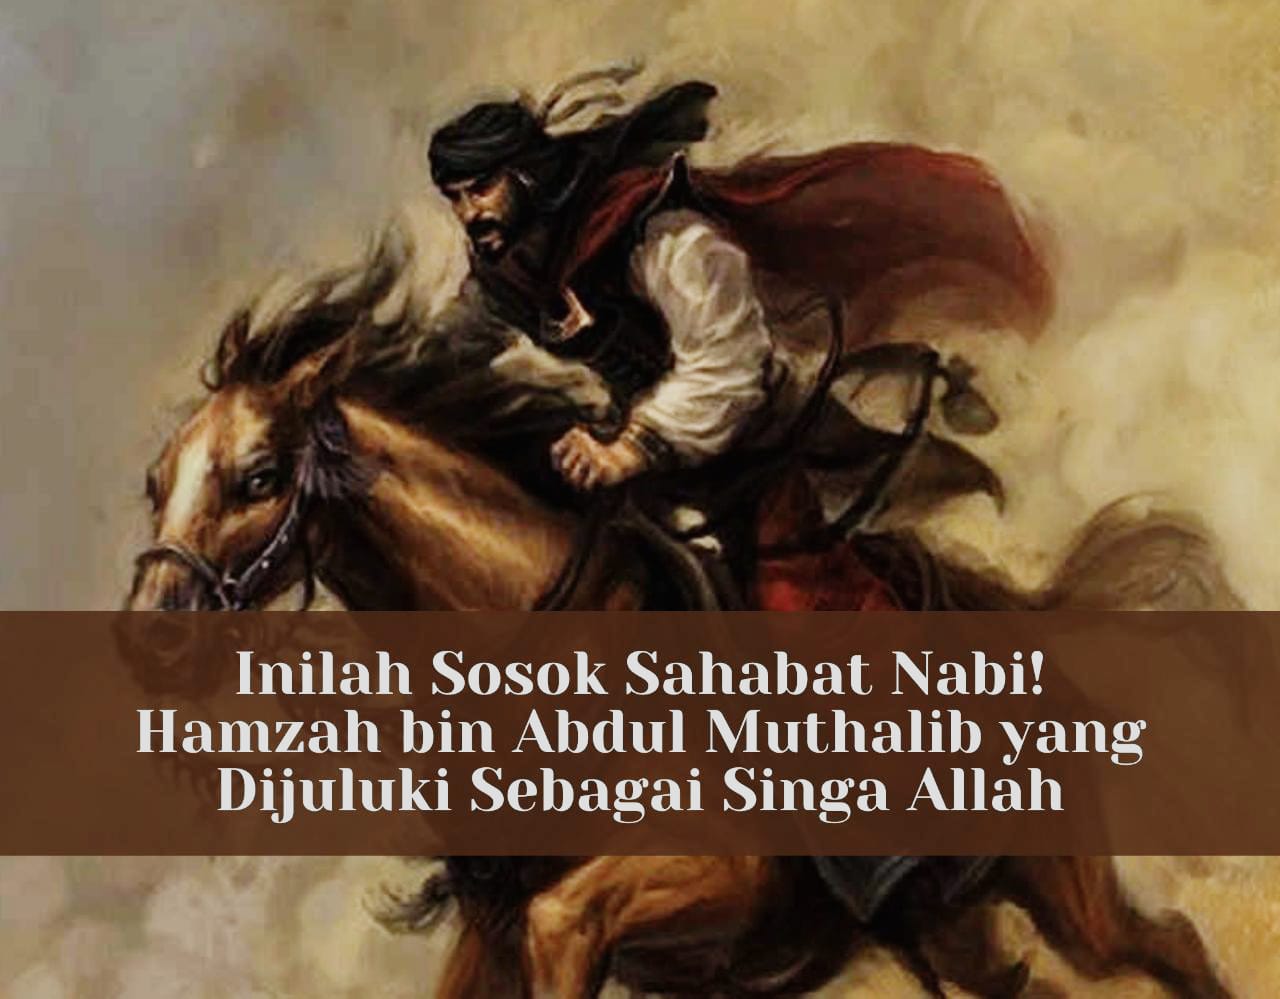 Inilah Sosok Sahabat Nabi! Hamzah bin Abdul Muthalib yang Dijuluki Sebagai Singa Allah